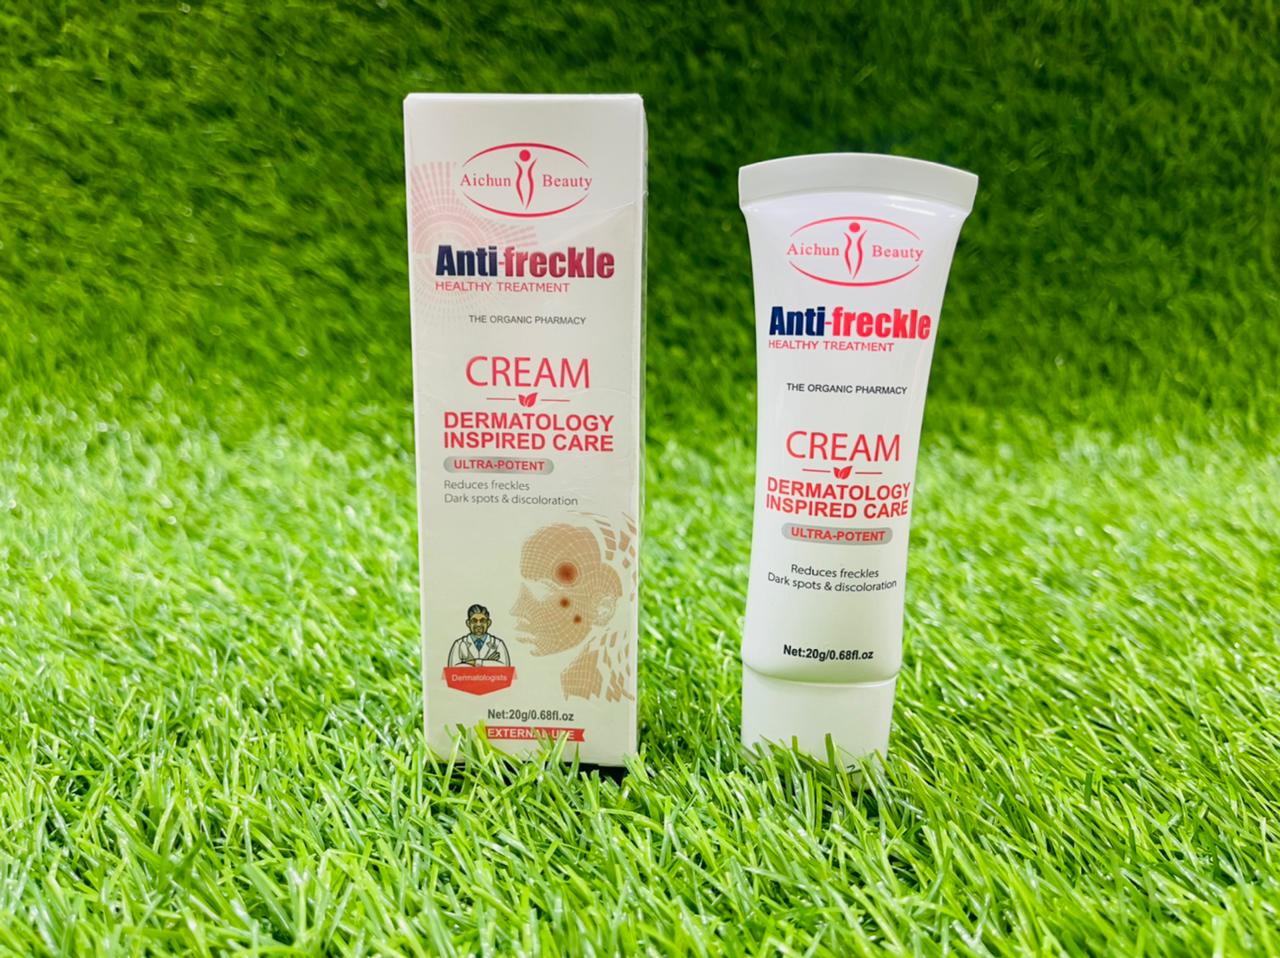 Aichun Beauty Anti Freckle Cream 20G